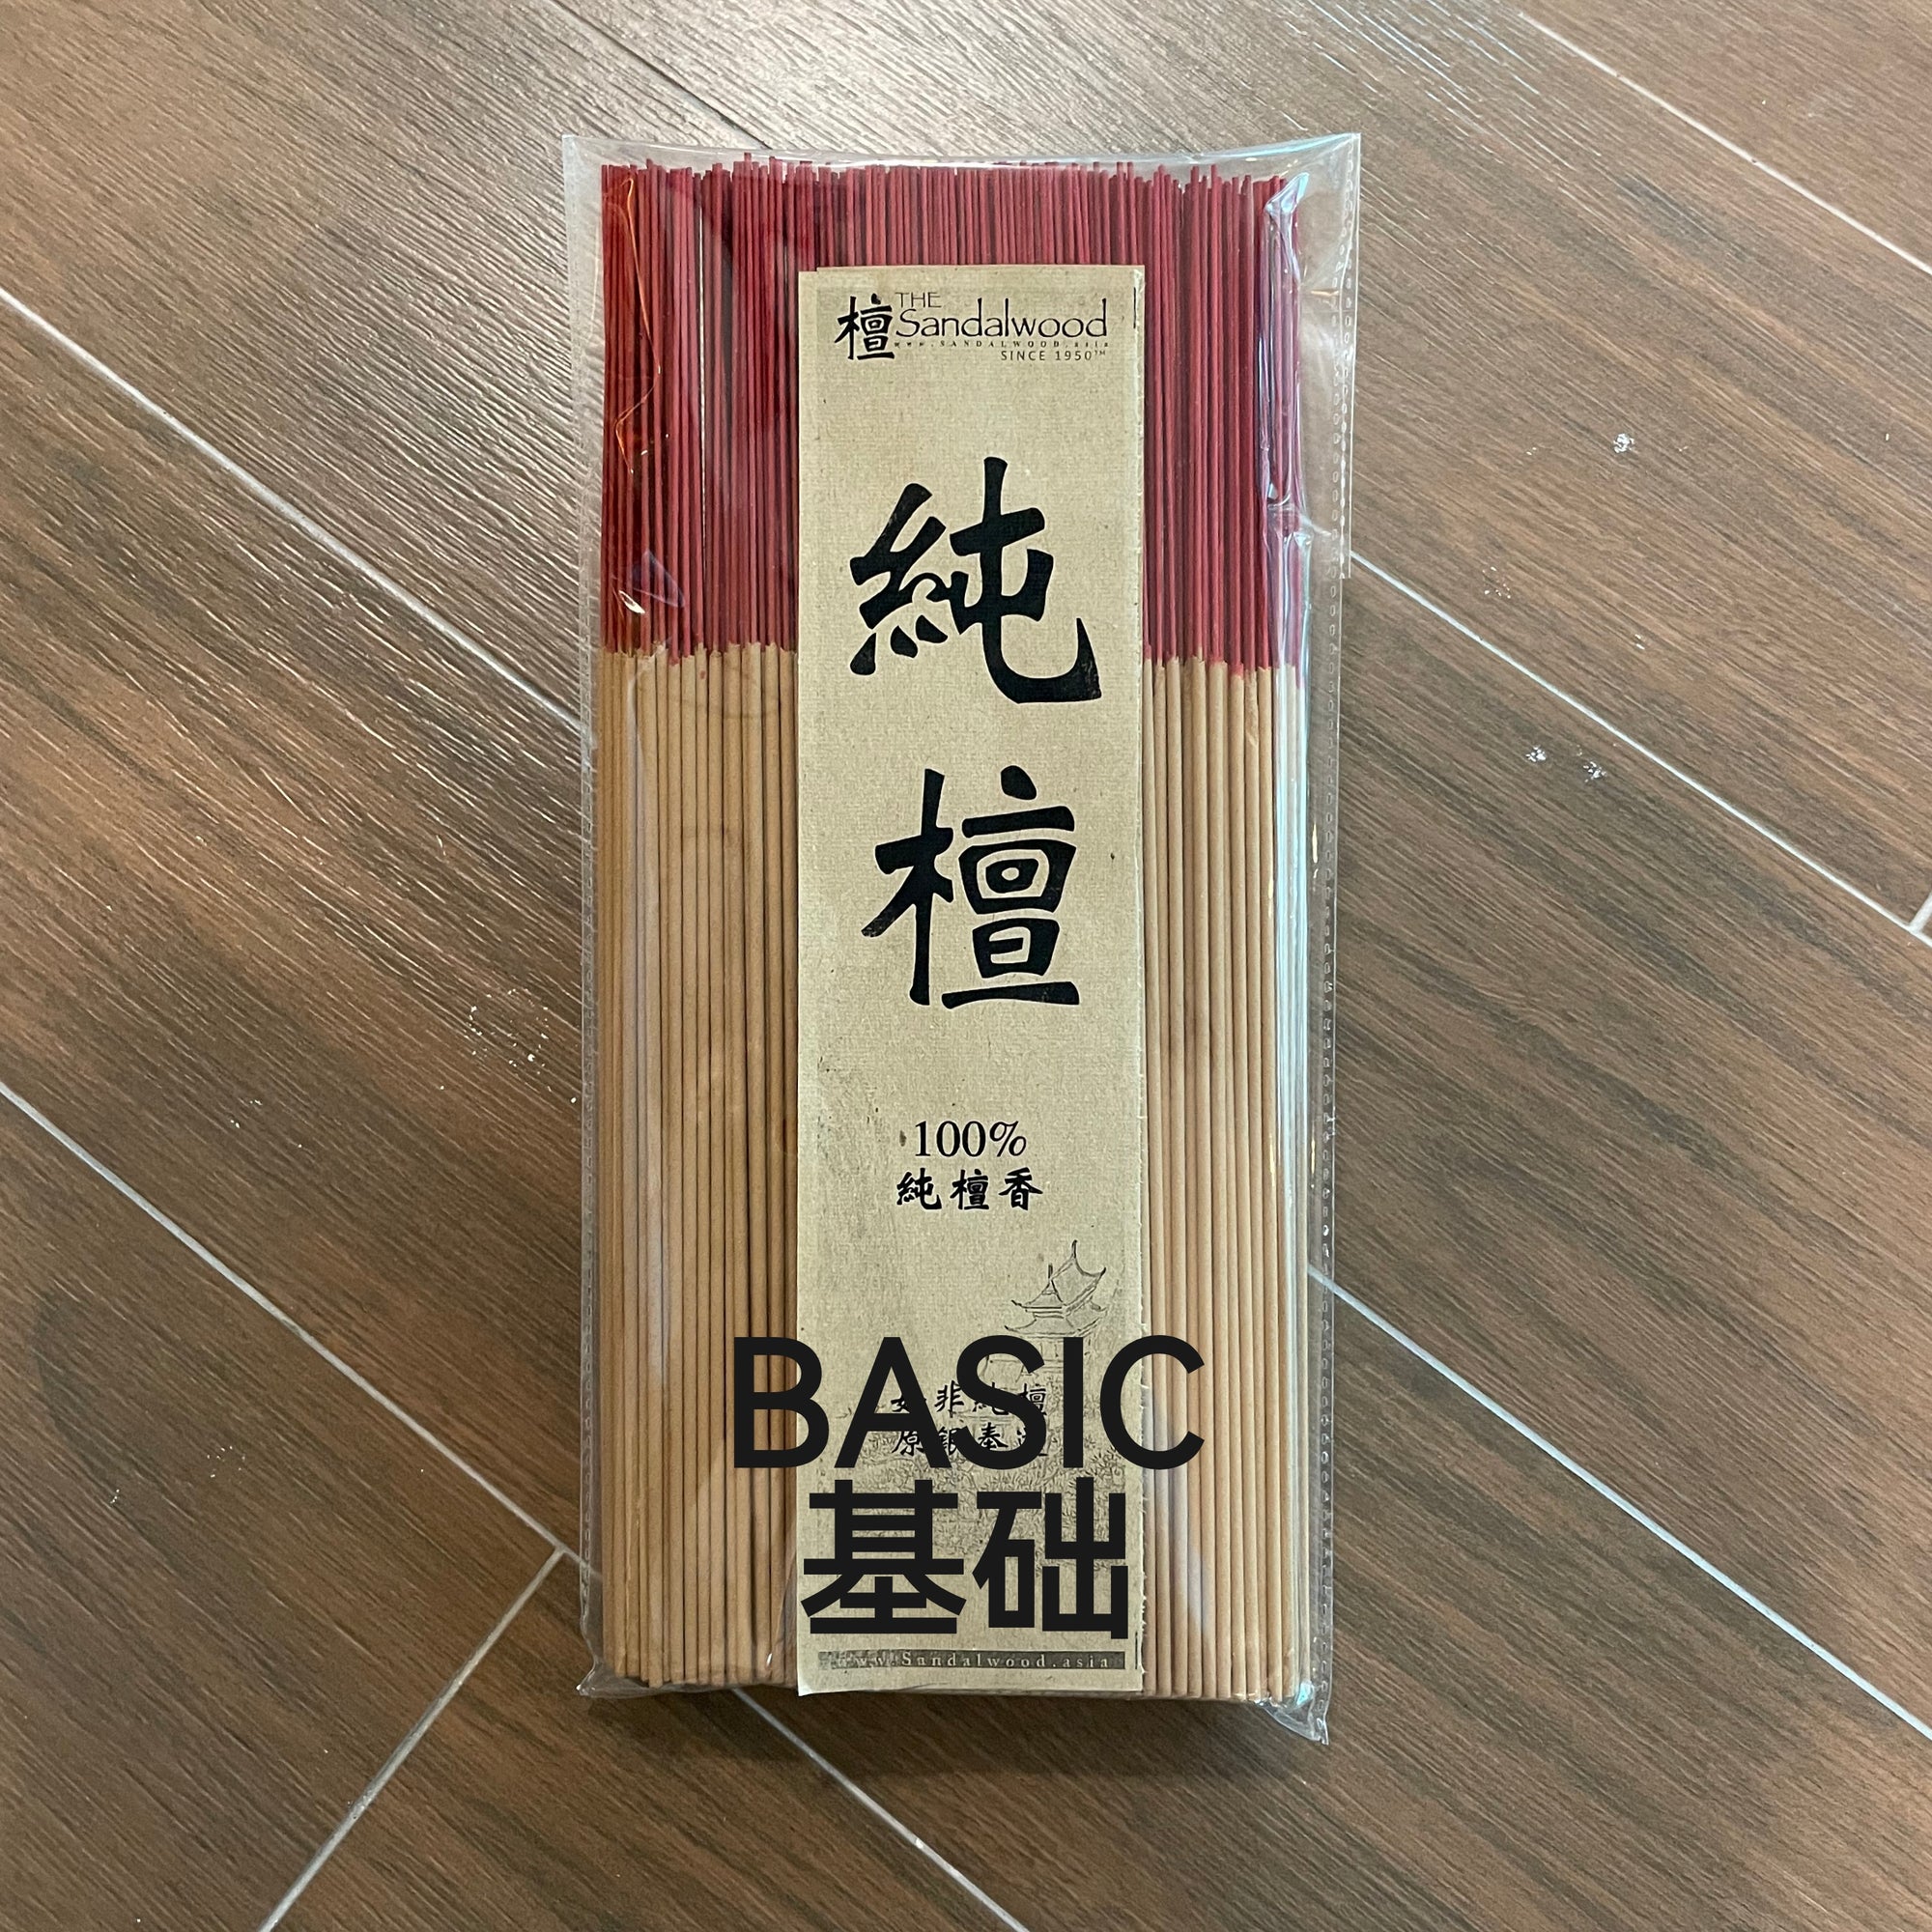 基础级小香<br>Basic Small Incense